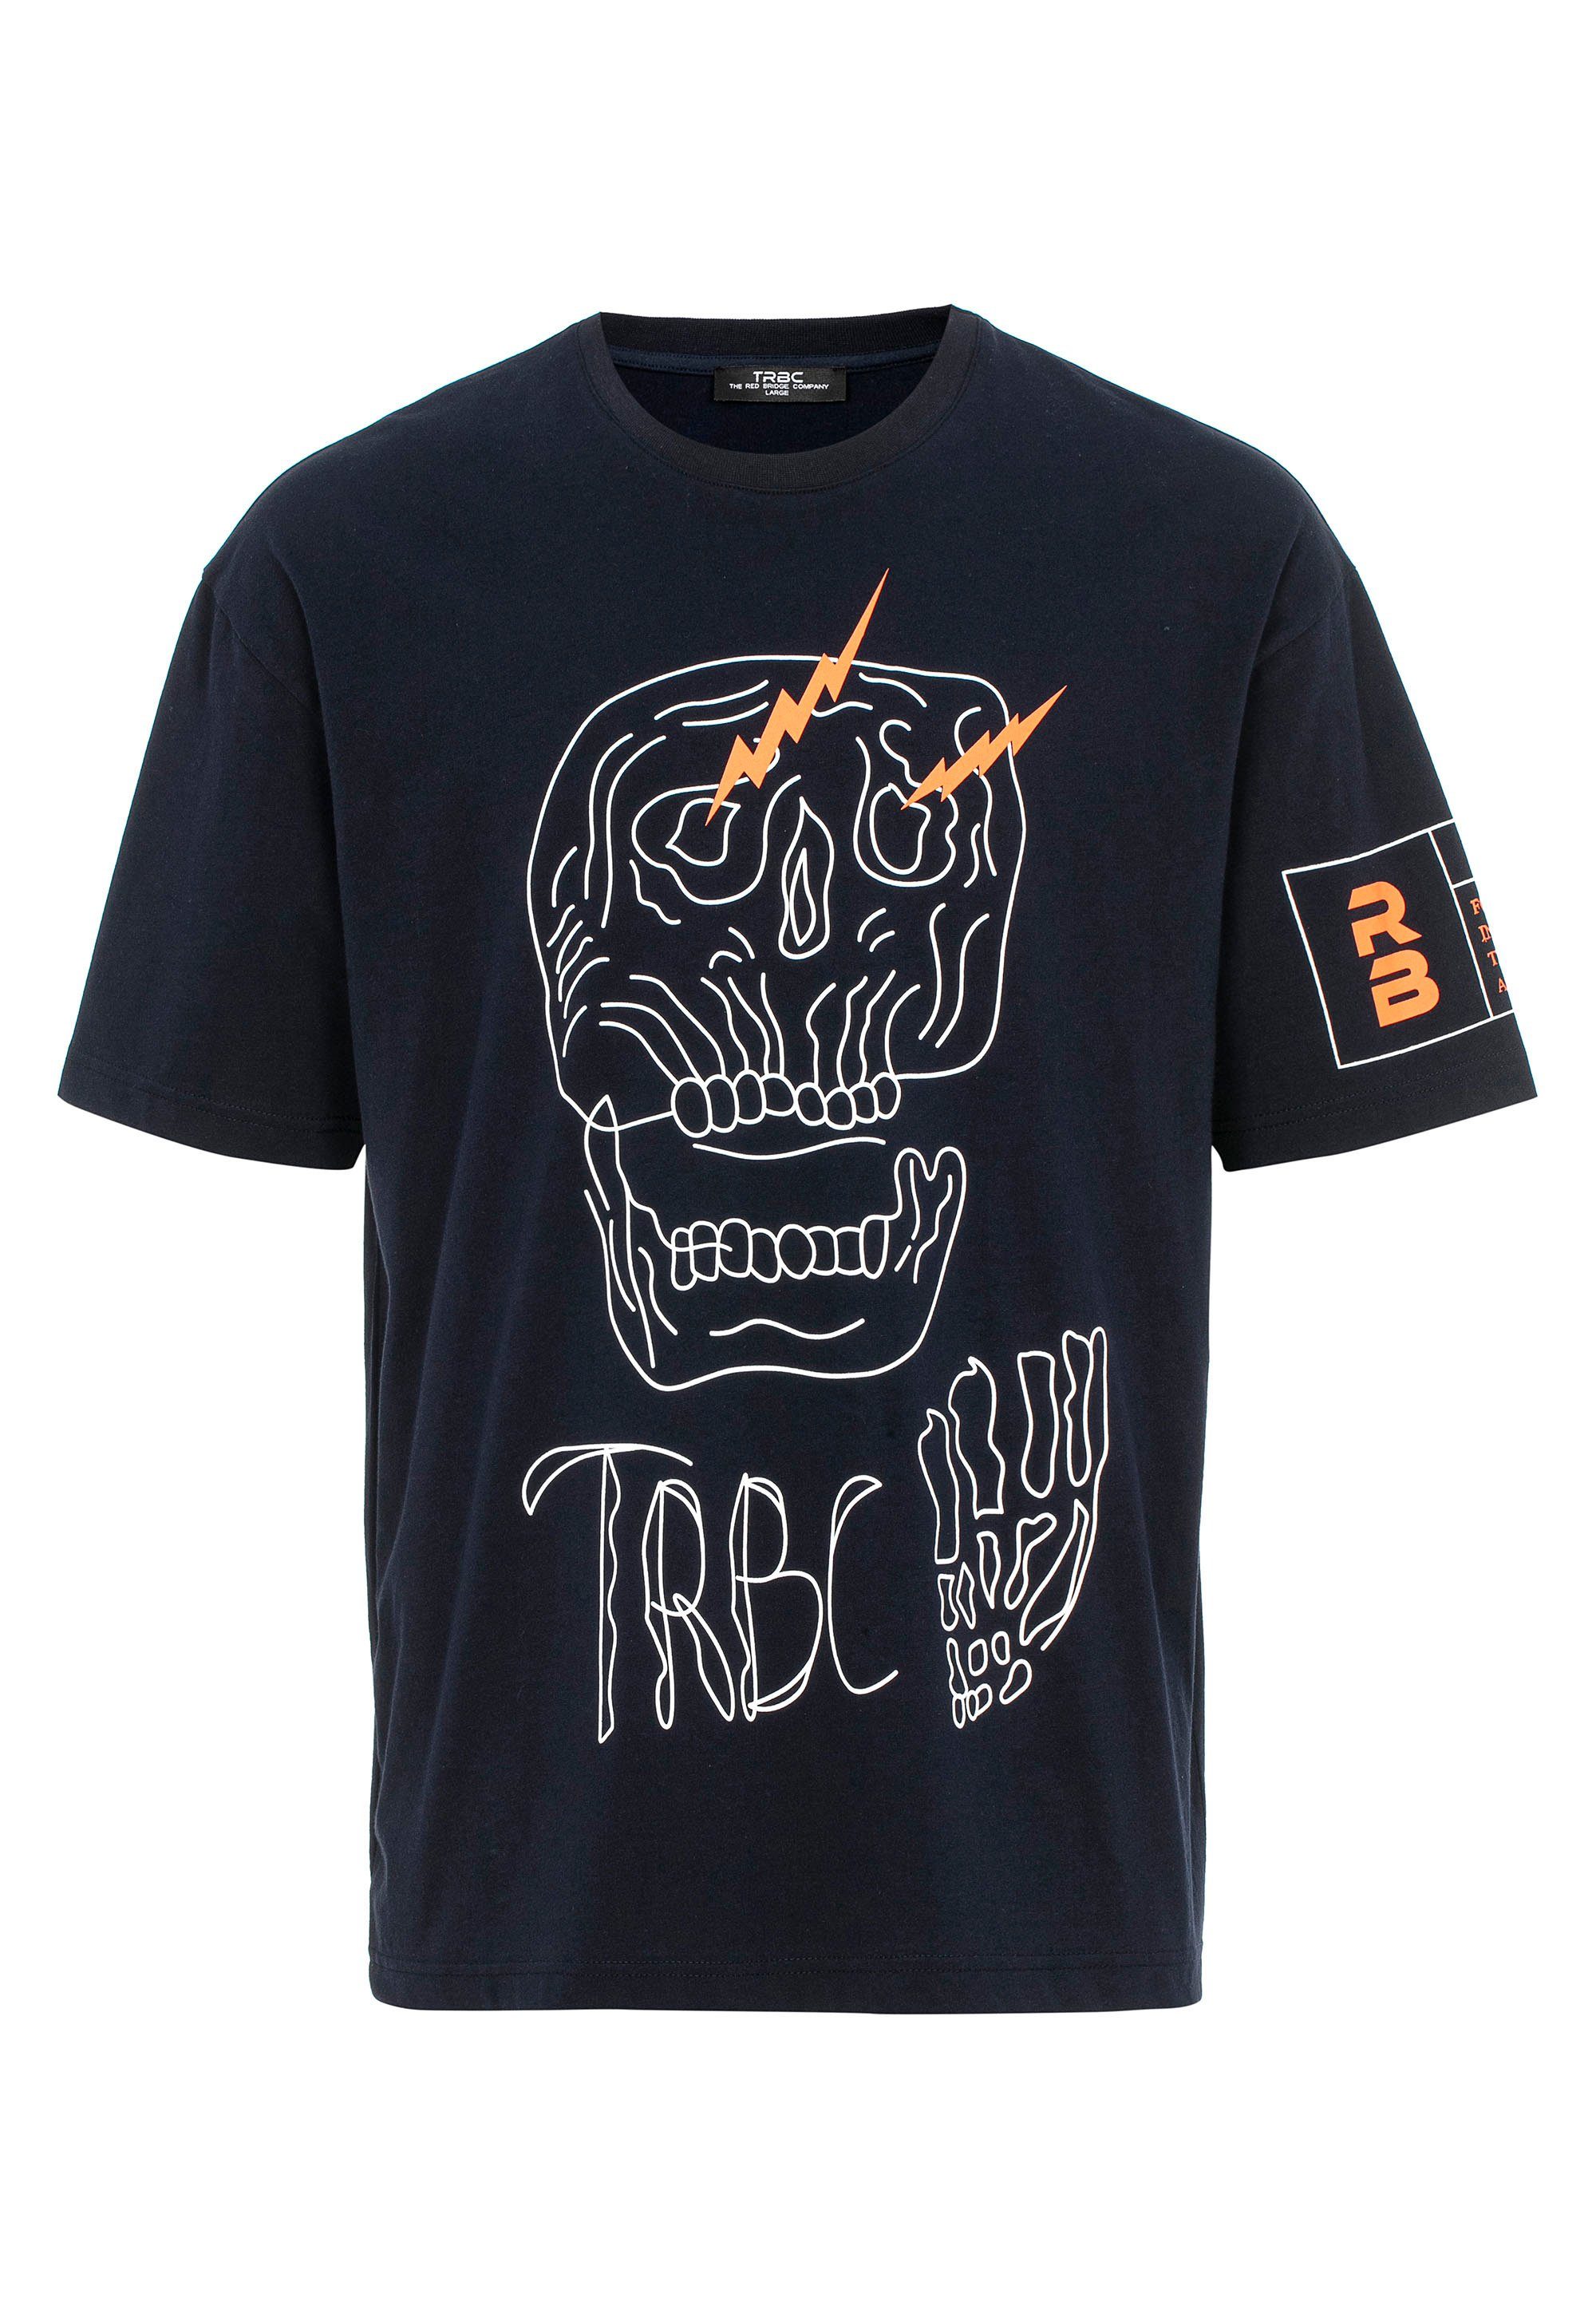 McAllen RedBridge stylischem mit T-Shirt dunkelblau Totenkopf-Print